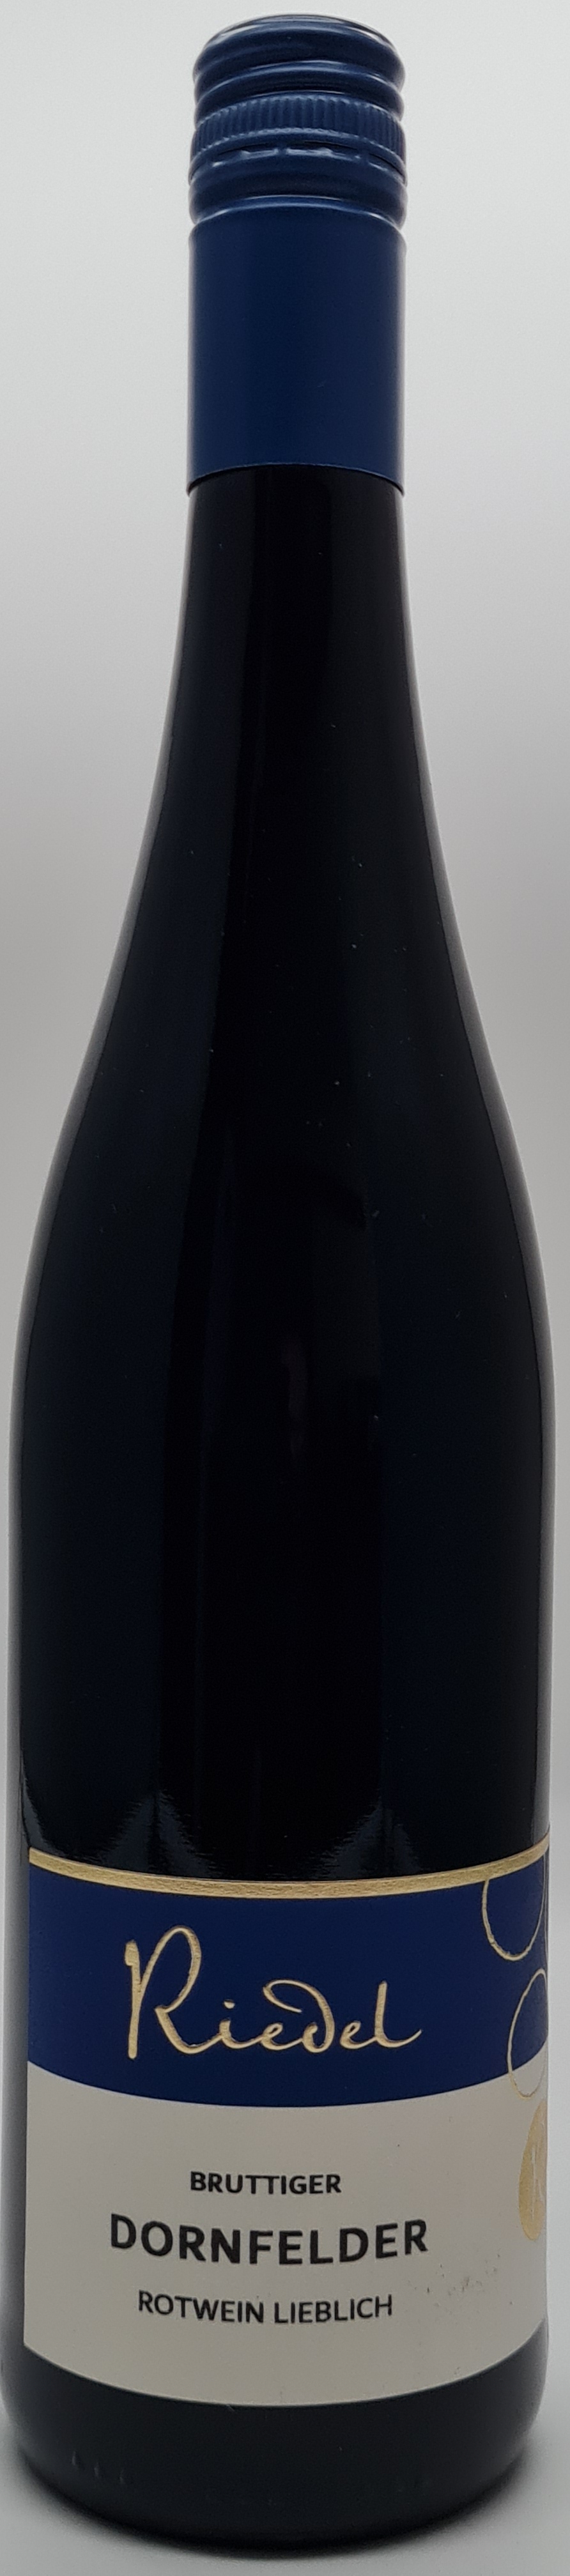 Weinshop Riedel - Bruttiger 2020 Ortswein, Mosel Dornfelder Rotwein lieblich